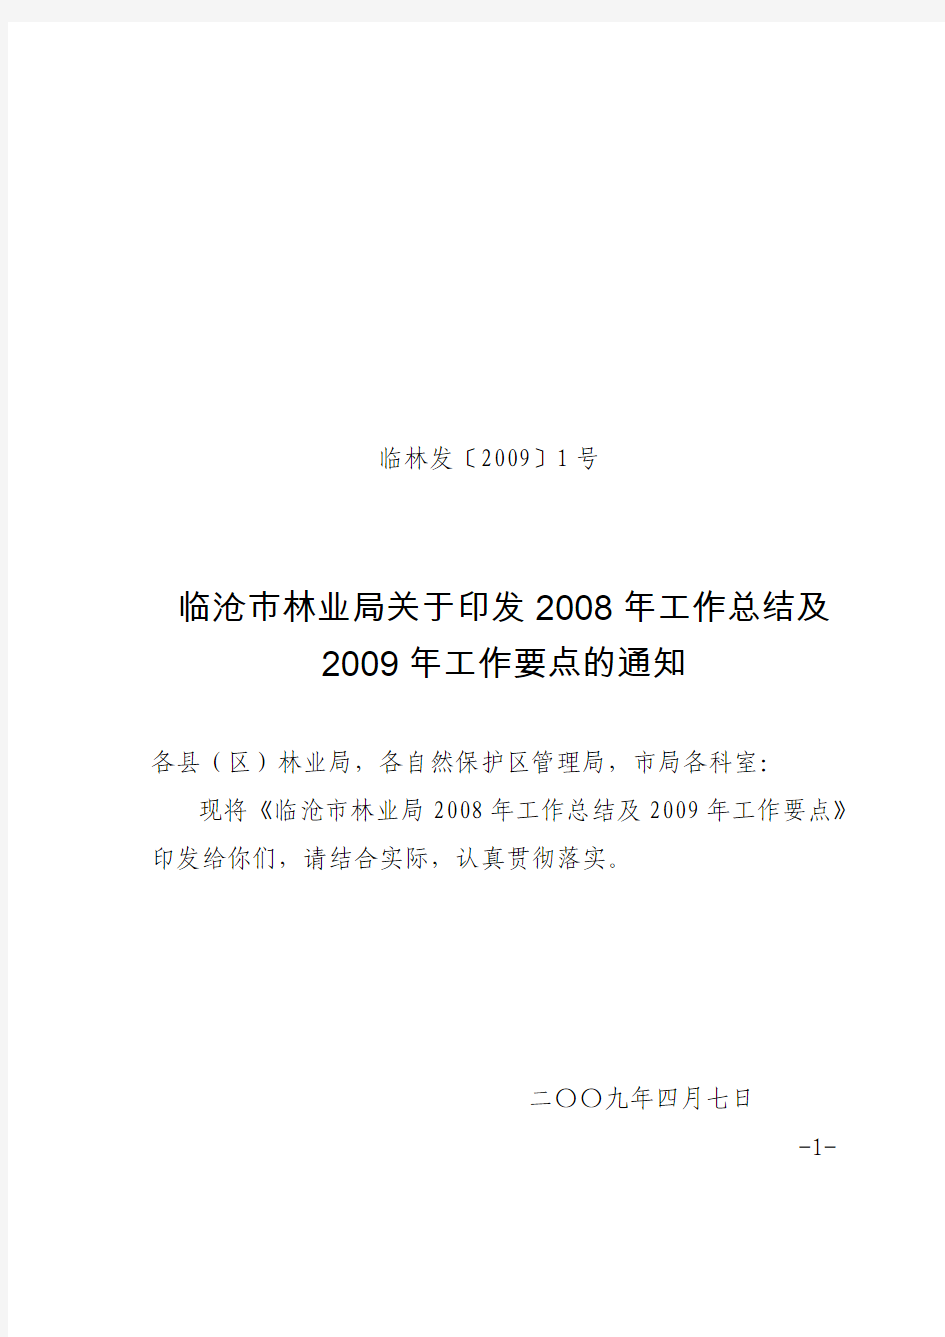 临林发〔2009〕1号临沧市林业局关于印发2008年工作总结及2009年工作要点的通知